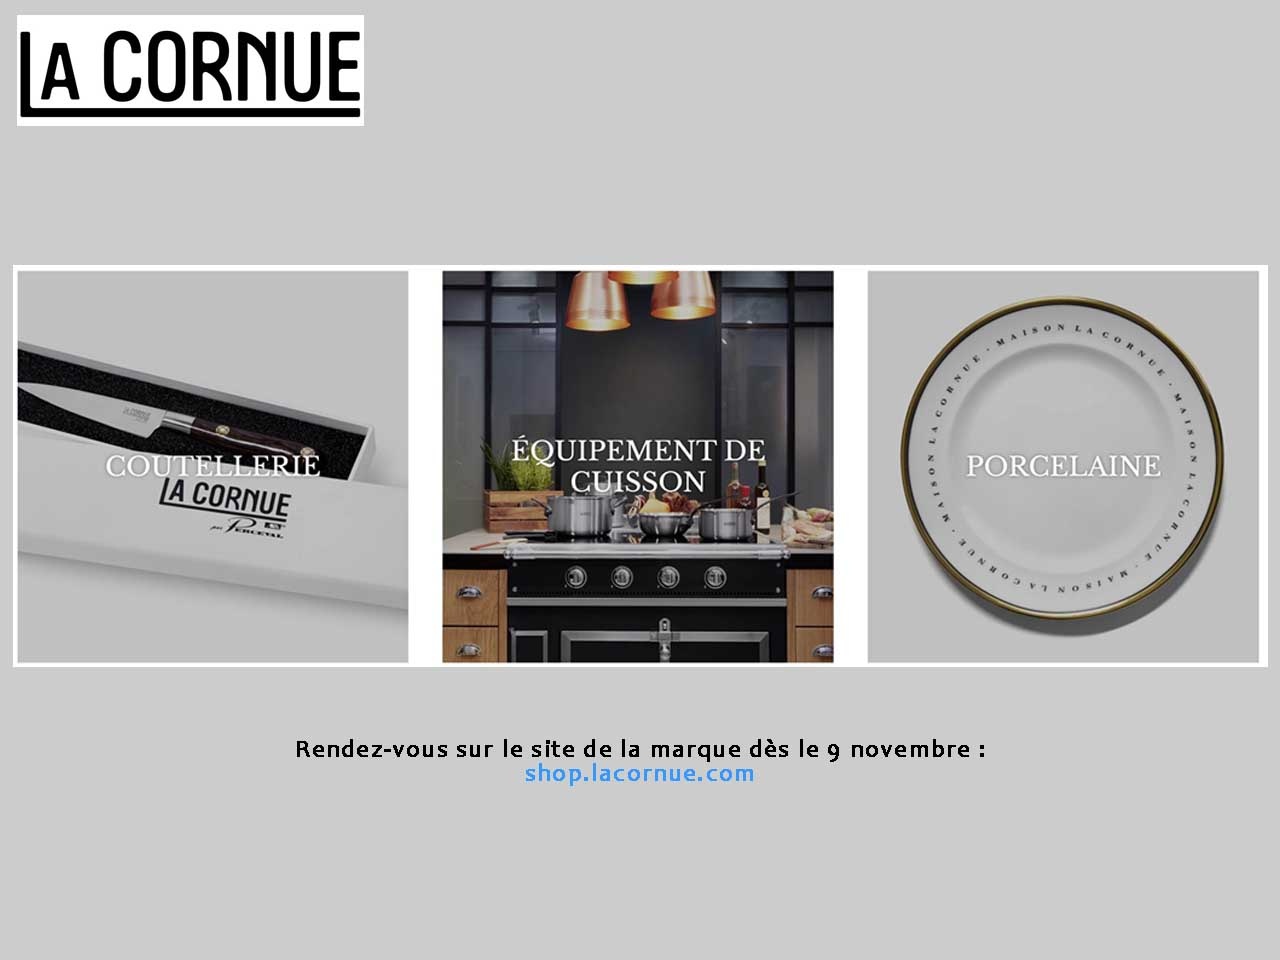 Shop.lacornue.com, l’excellence de La Cornue à portée de clic